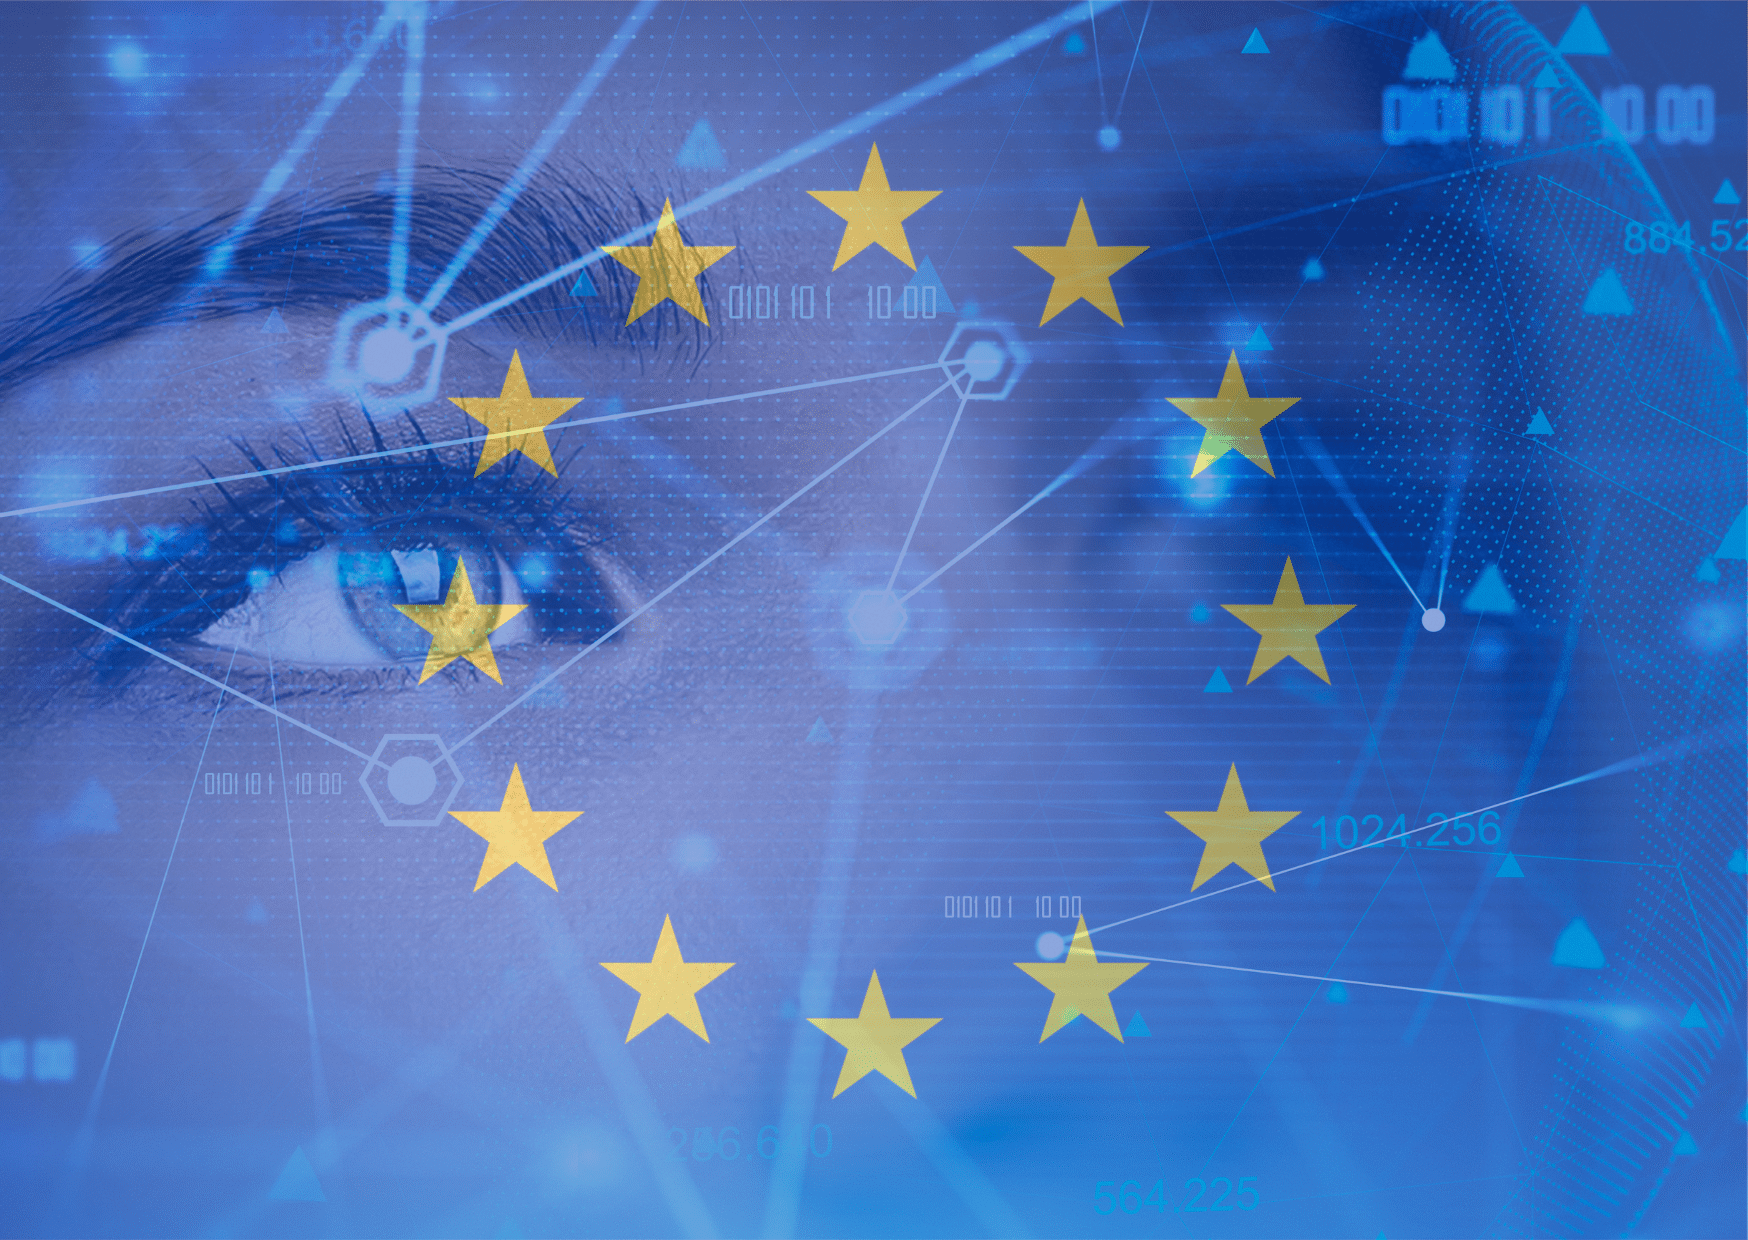 règlementation européenne sur l'intelligence artificielle ou allons-nous ?